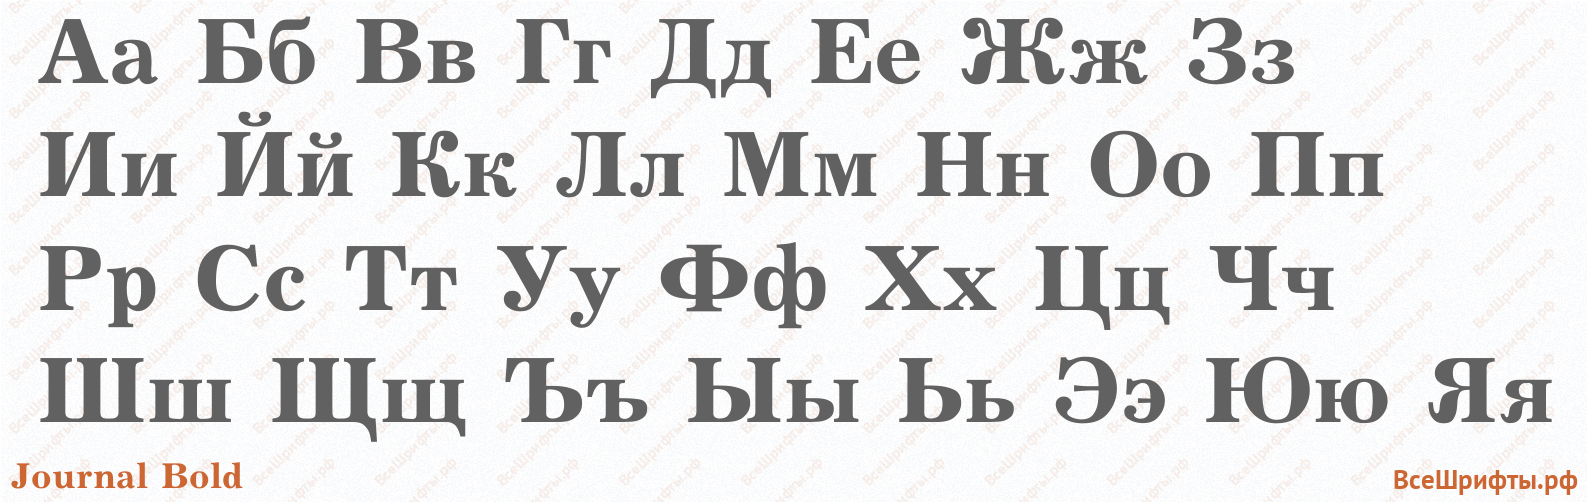 Шрифт Journal Bold с русскими буквами